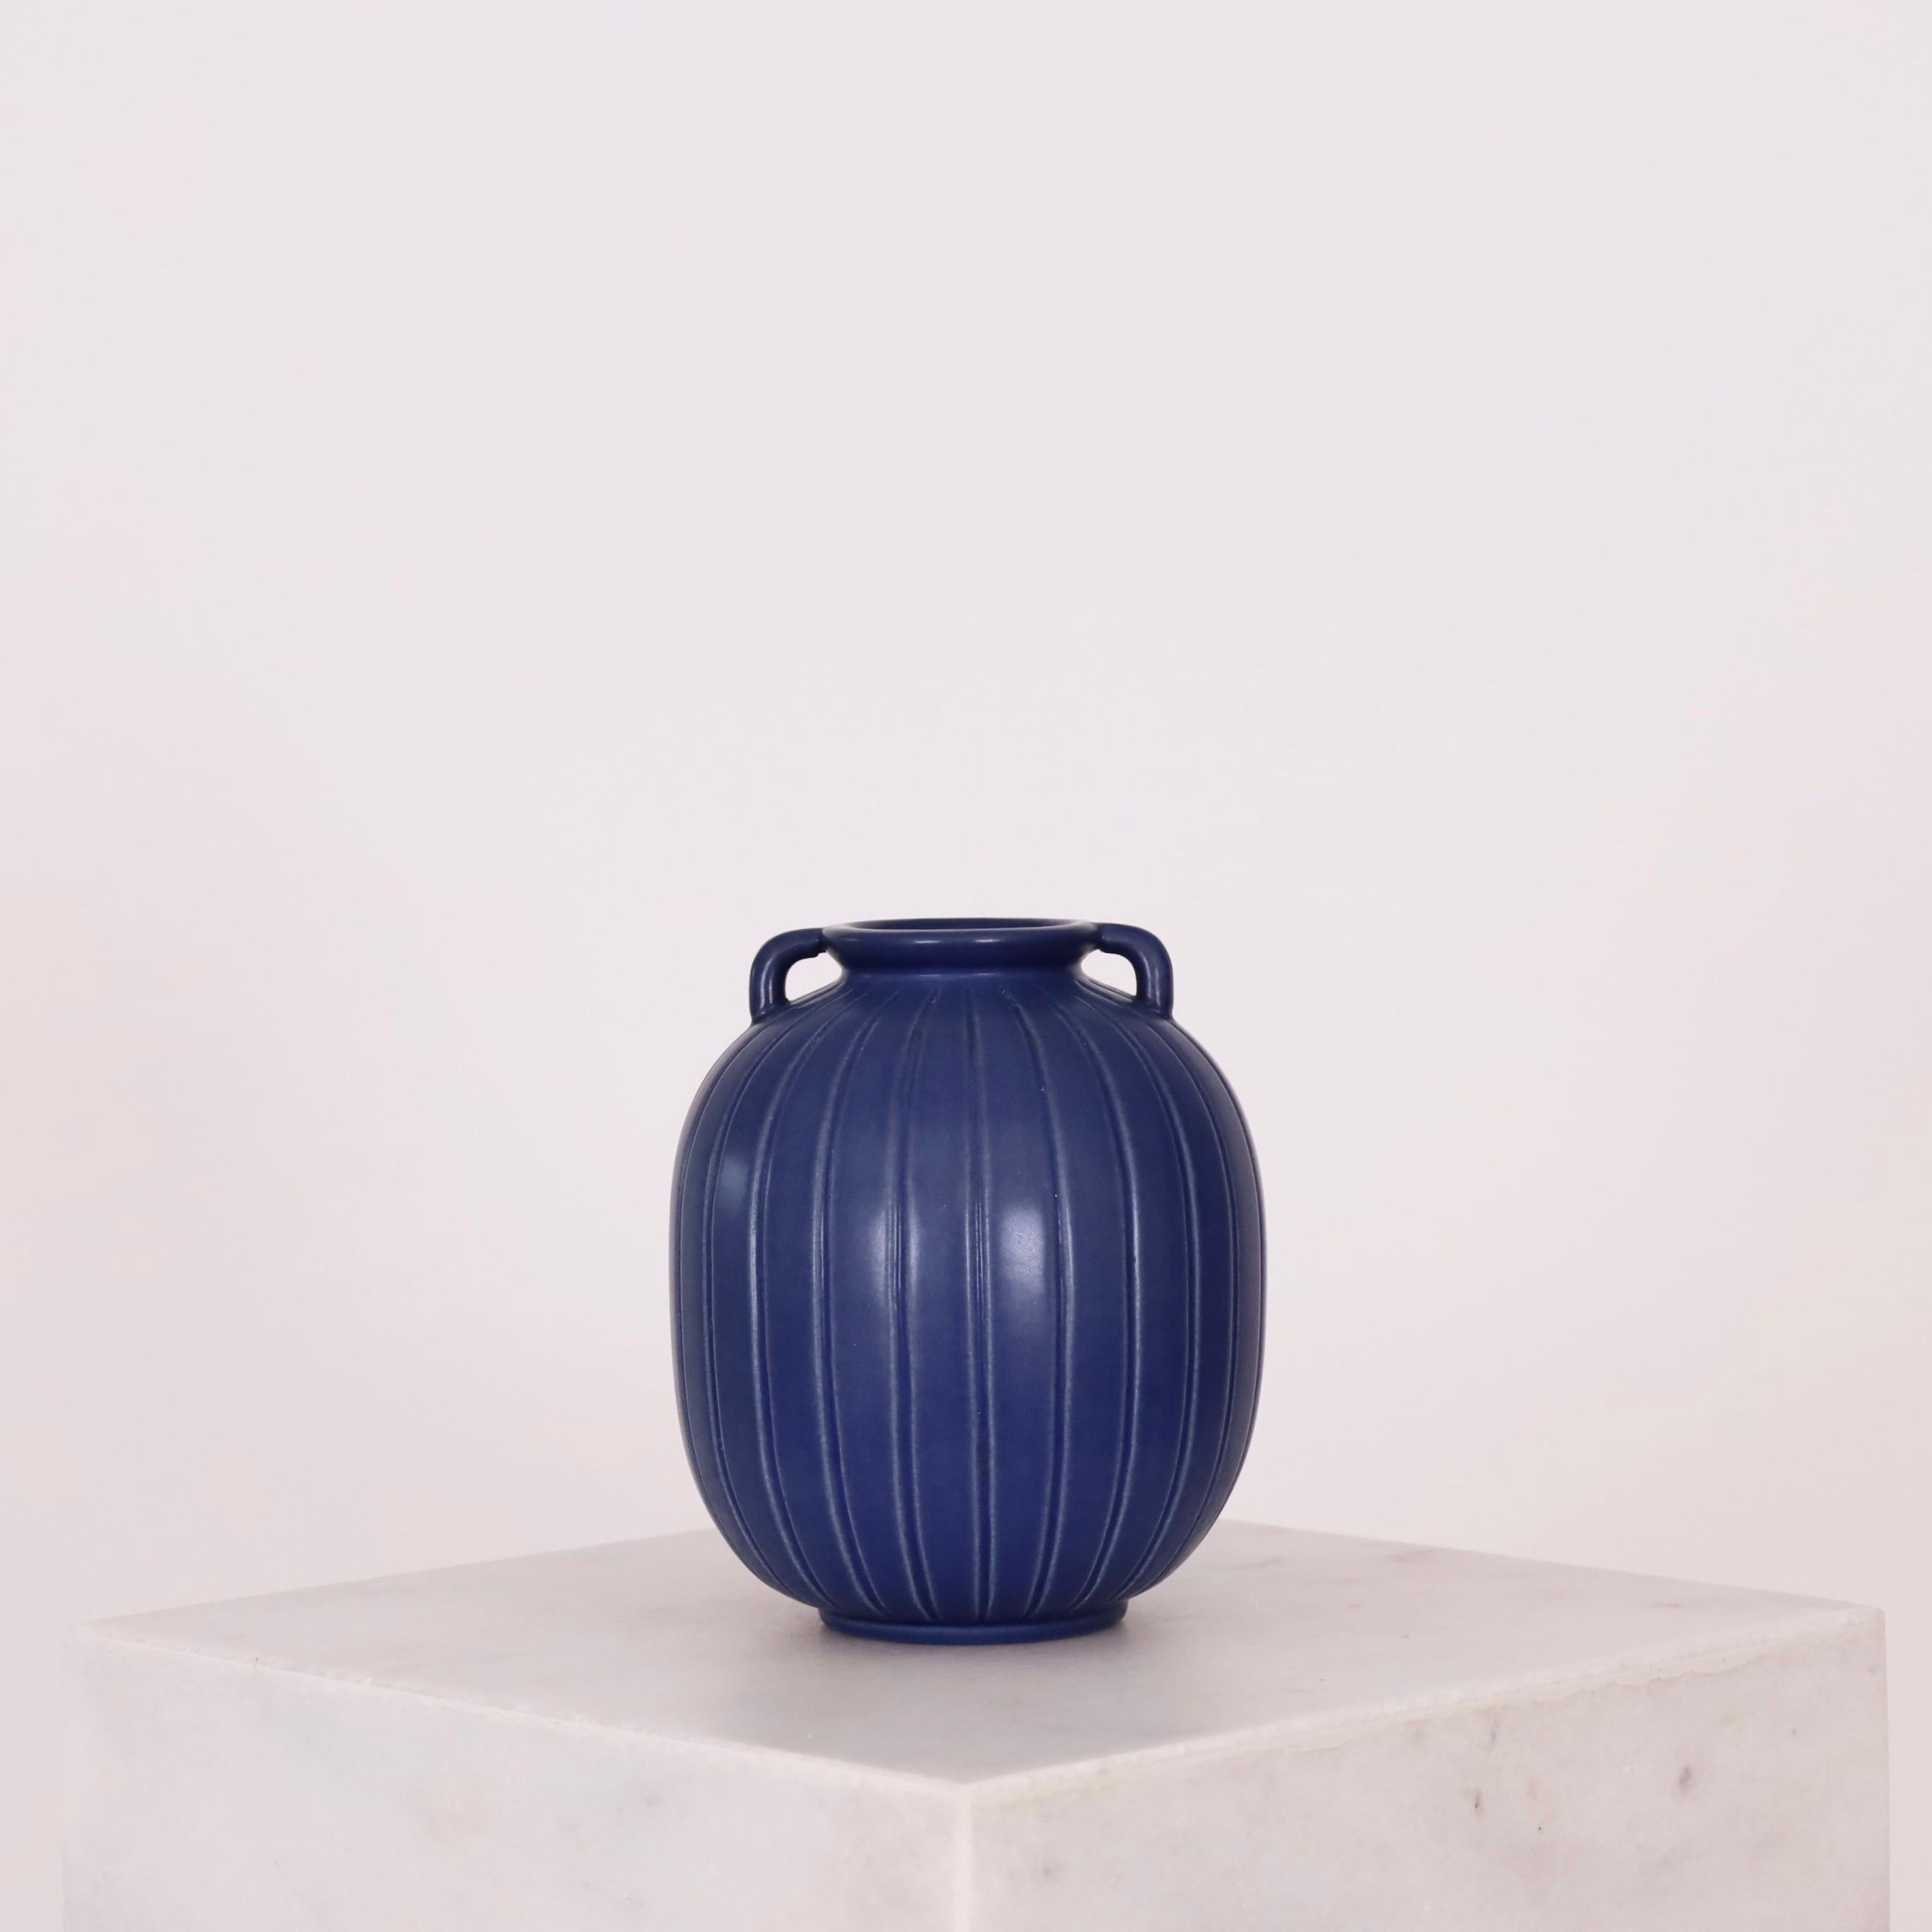 Vase en grès bleu à lignes verticales conçu par Axel Sørensen pour P. Ipsen en 1941. Simple, mais exquis.  

* Un vase en grès bleu avec des lignes verticales et de petites poignées.
* Designer : Axel Sorensen
* Style : 14
* Producteur : P. Ipsen